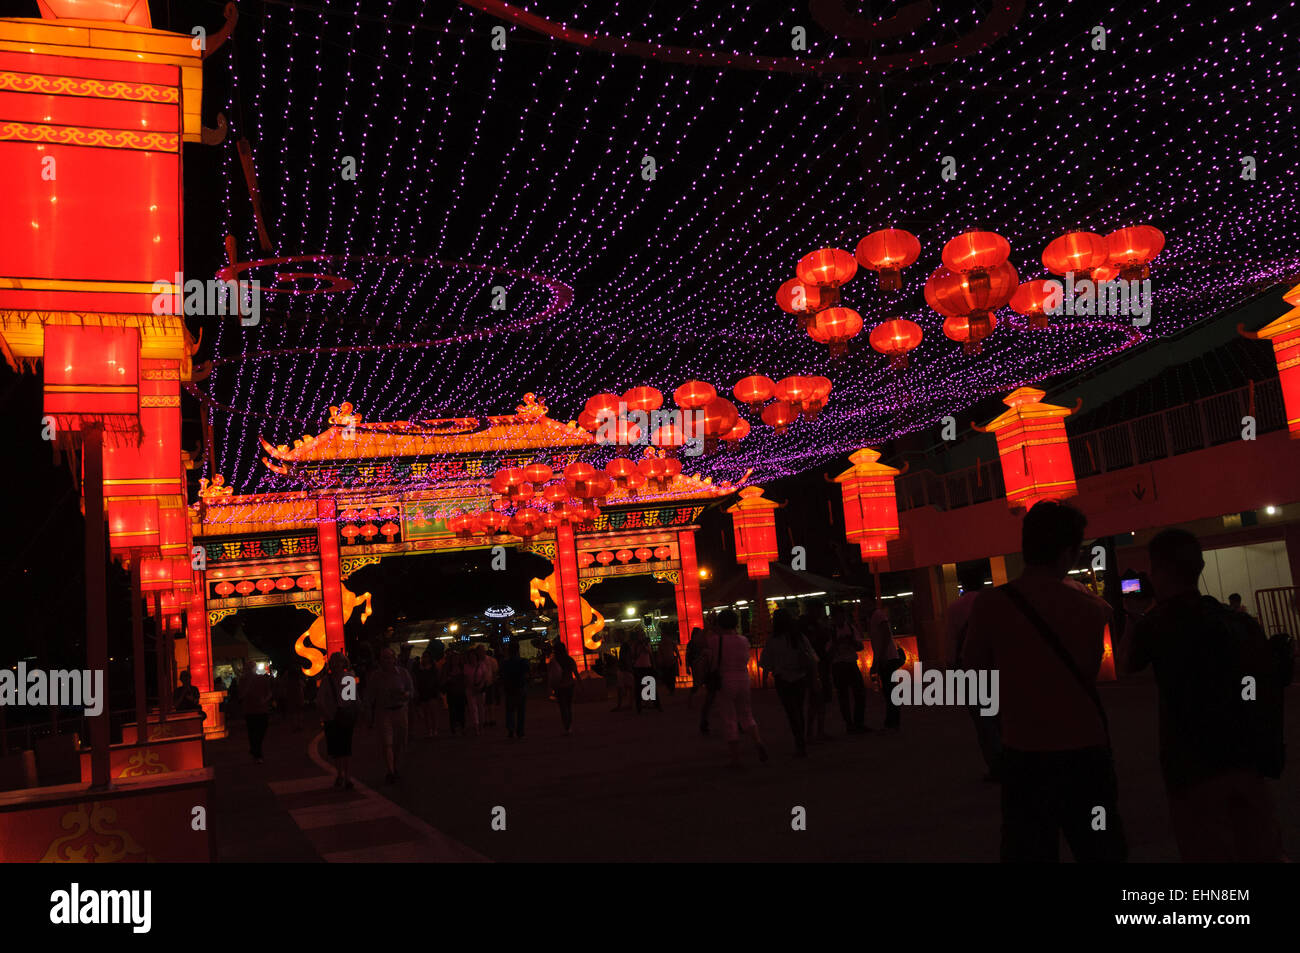 Année du cheval nouvel an chinois fête des lanternes. Singapour Banque D'Images